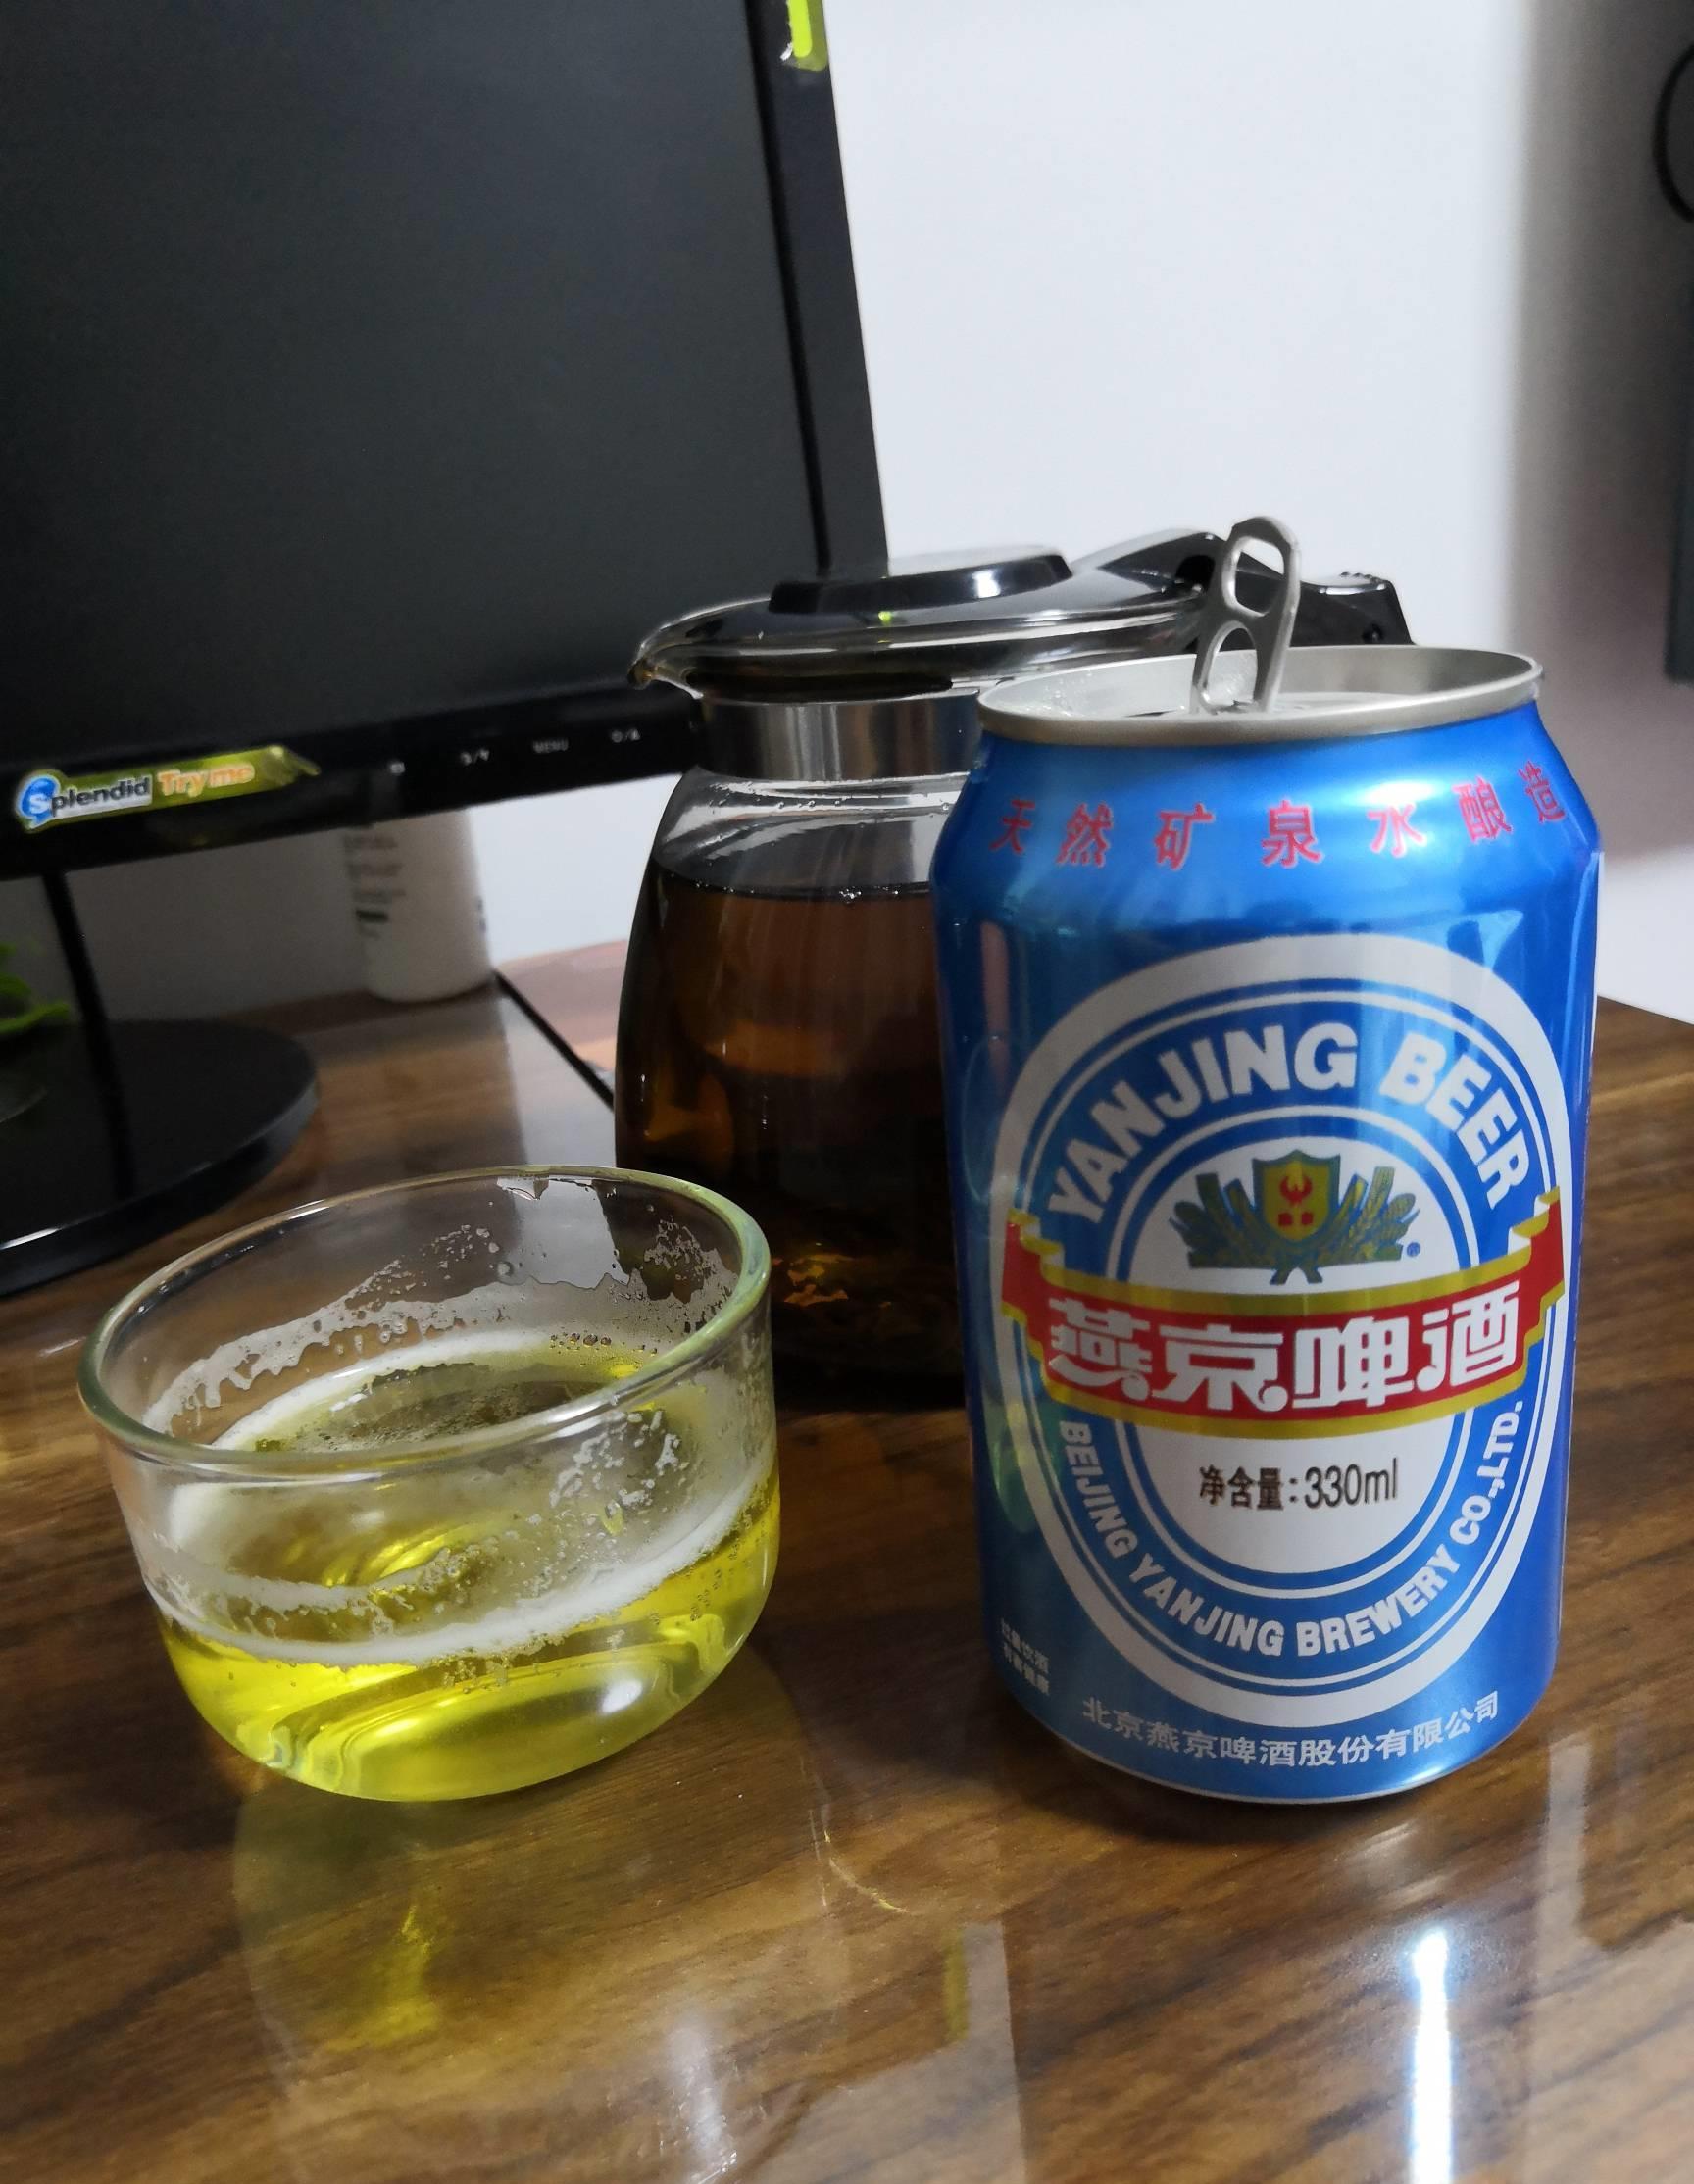 燕京啤酒(000729)股吧